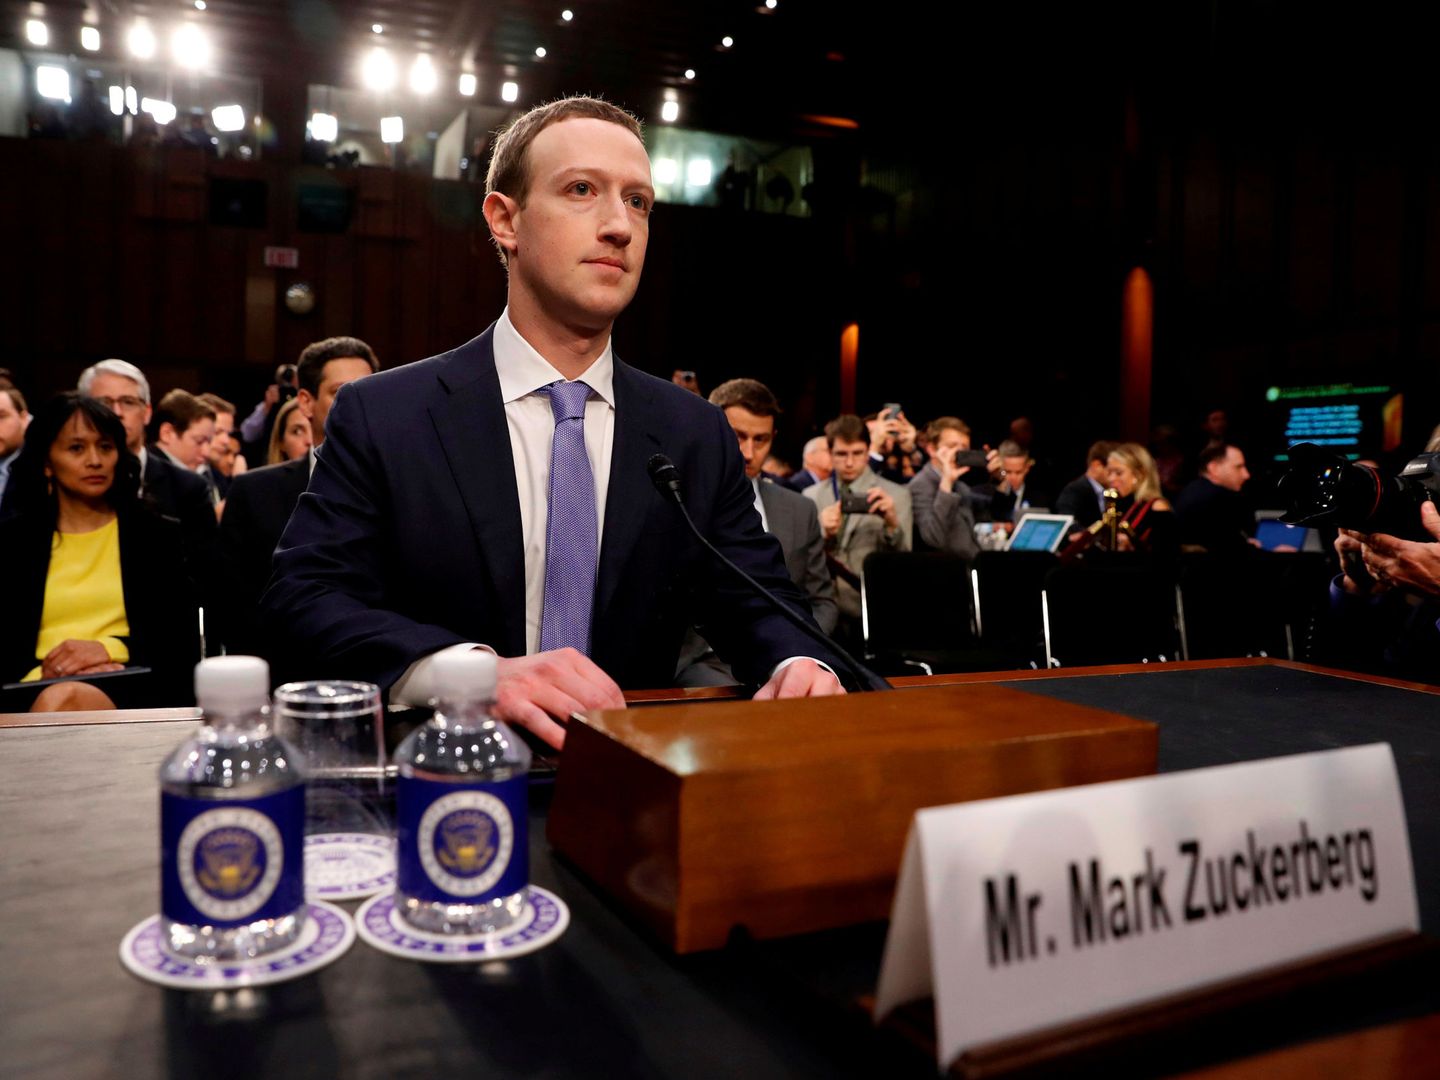 Marck Zuckerberg testifica ante el Senado de Estados Unidos (Reuters)